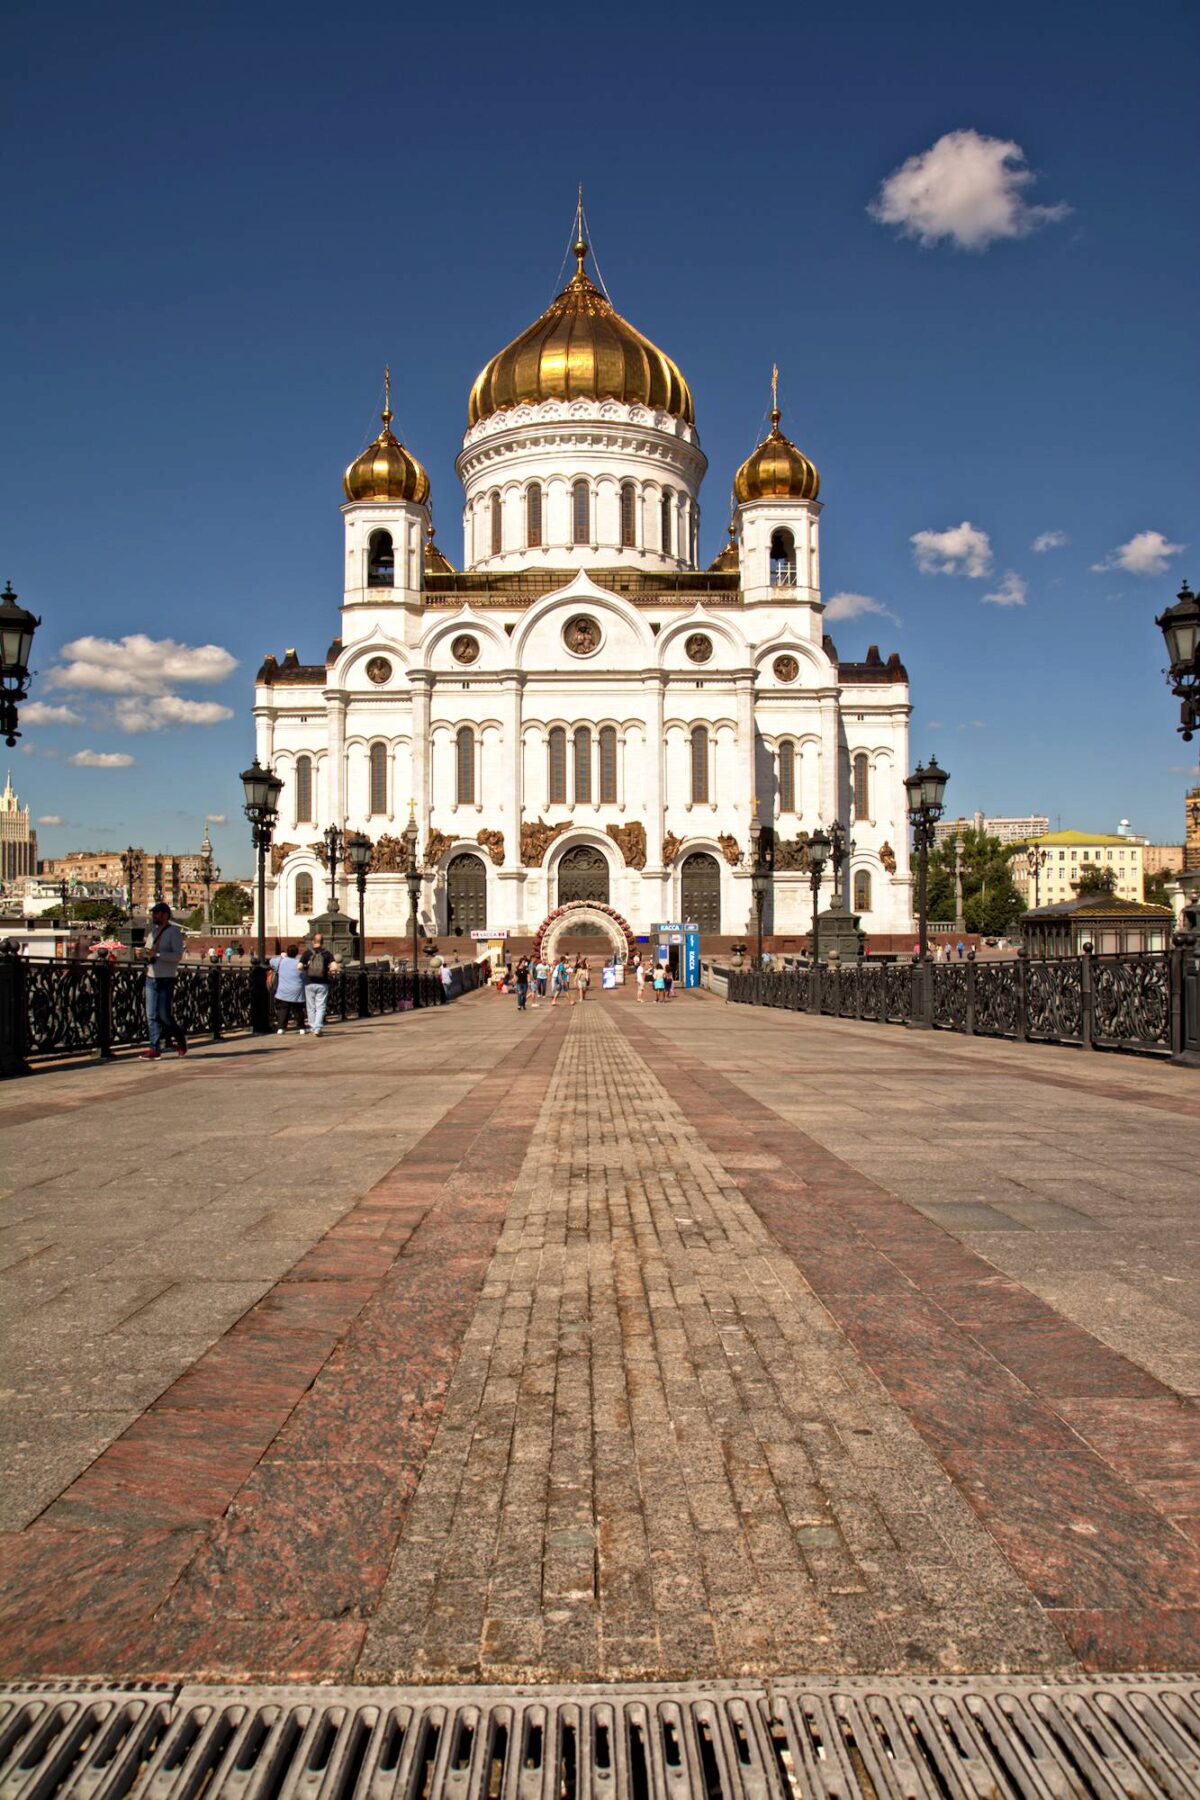 La meravigliosa cattedrale ricostruita a Mosca dopo le distruzioni del potere sovietico